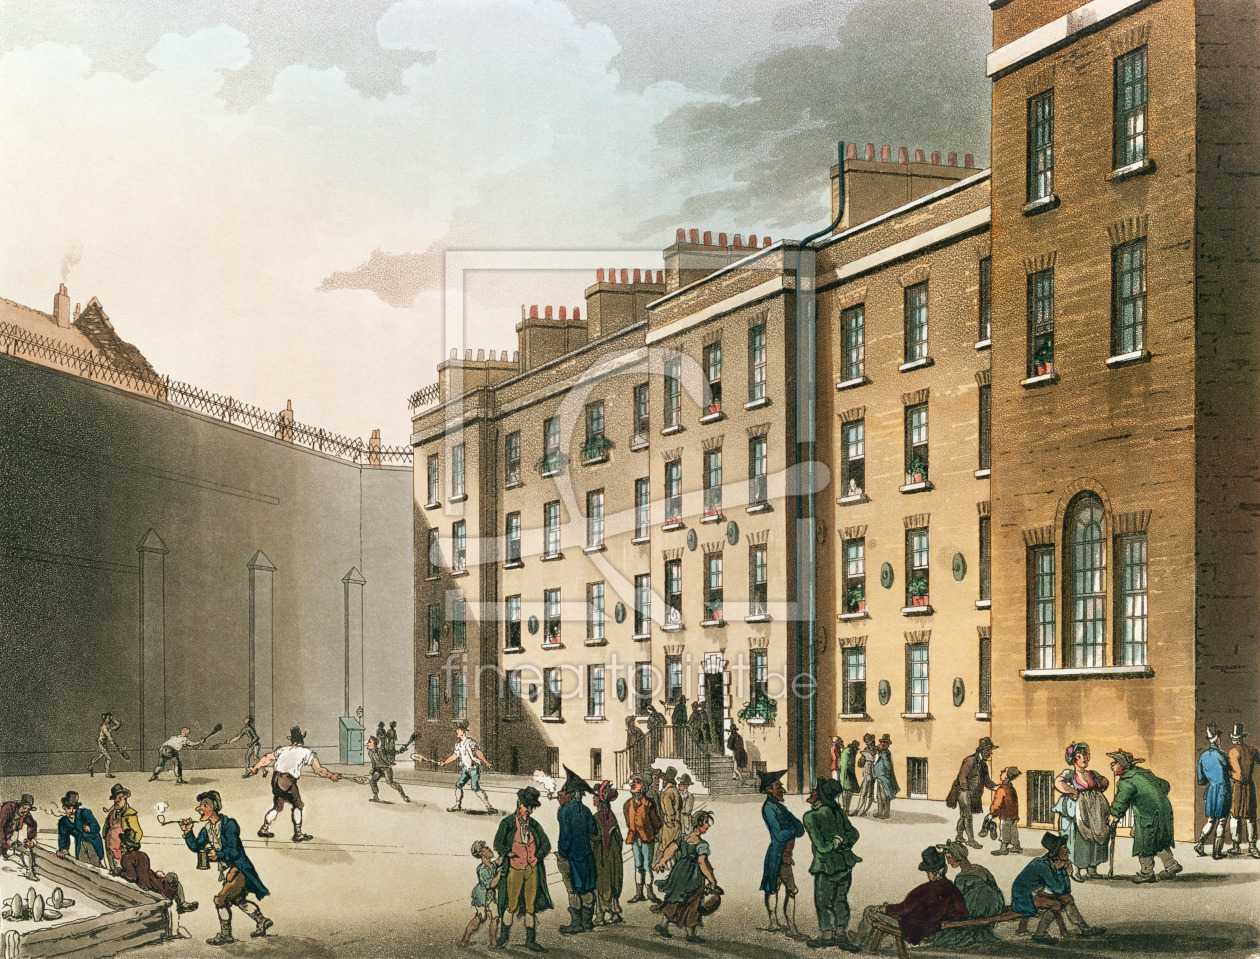 Bild-Nr.: 31002628 The Fleet Prison from Ackermann's 'Microcosm of London', Volume II, 1809 erstellt von Rowlandson, Thomas